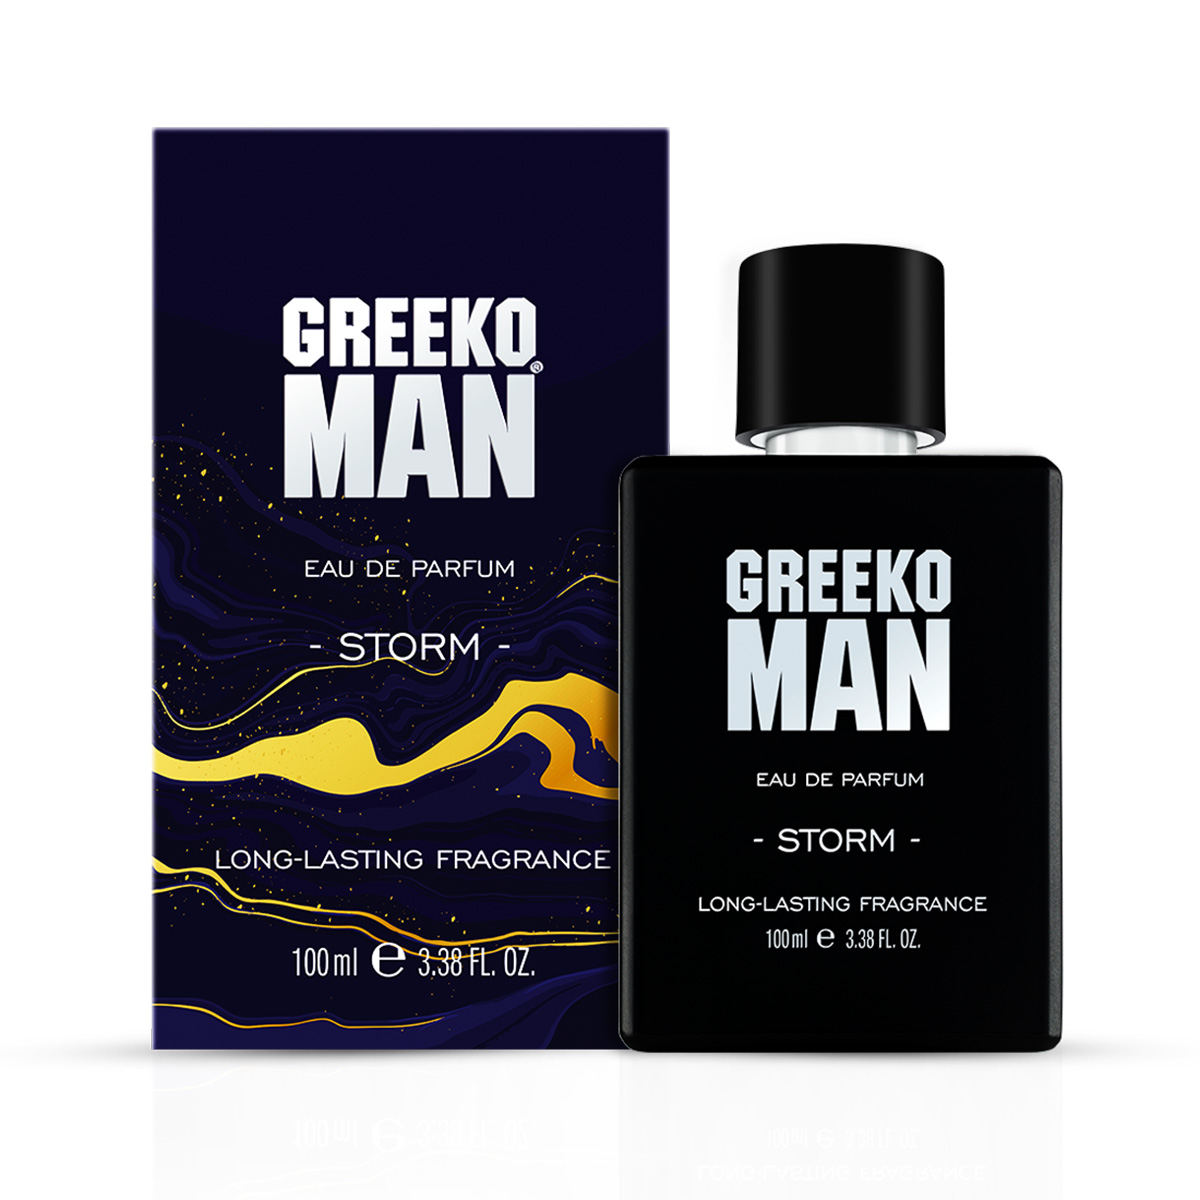 Greeko Man Perfume for Men (Storm) 100ml - Luxurious Premium Perfume